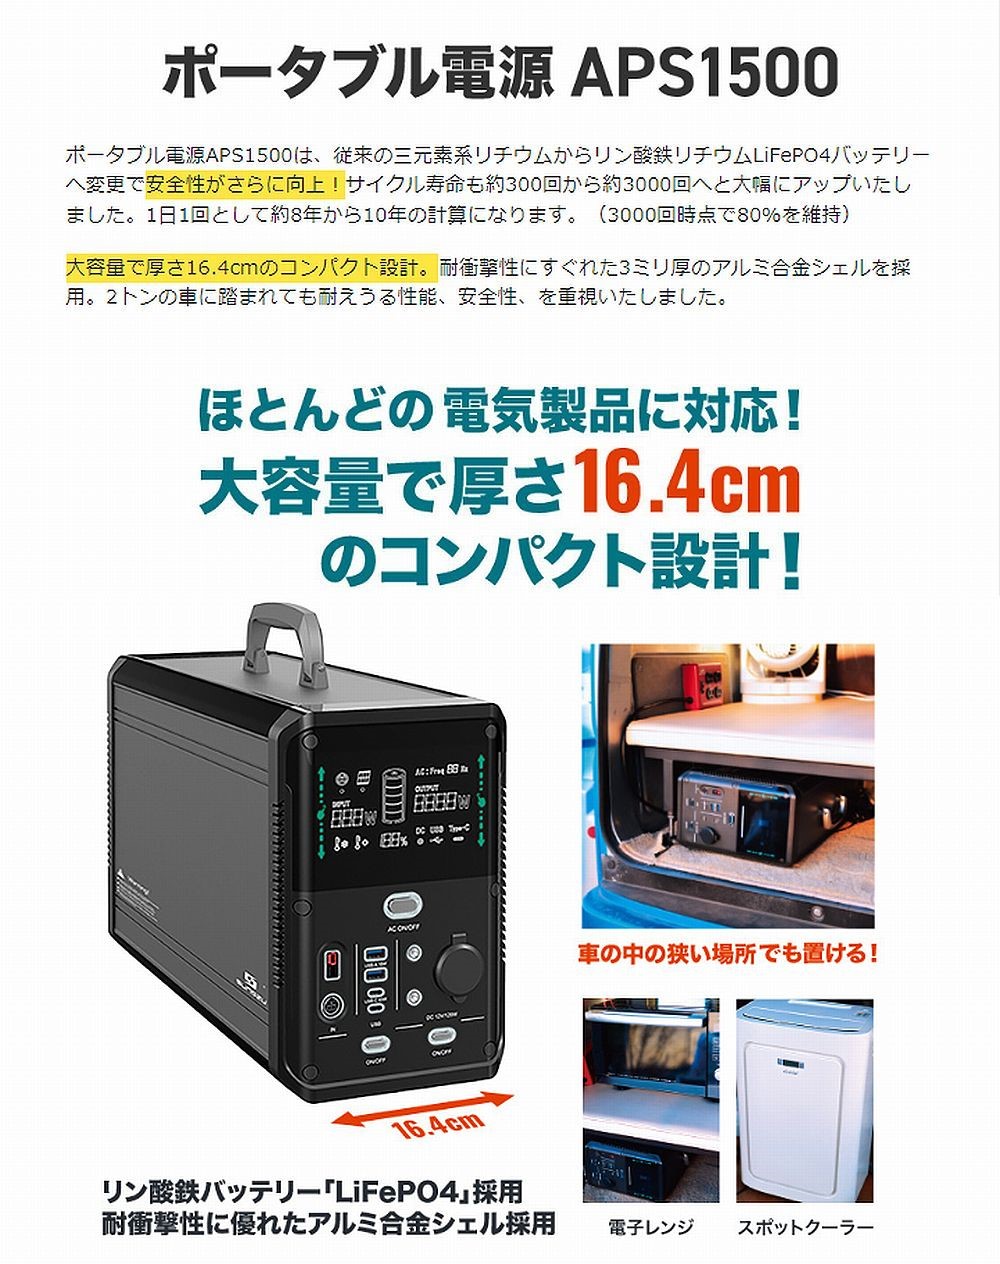 SUNGZU 大容量ポータブル電源1500W | ニュージャパンヨット ーパーツ 